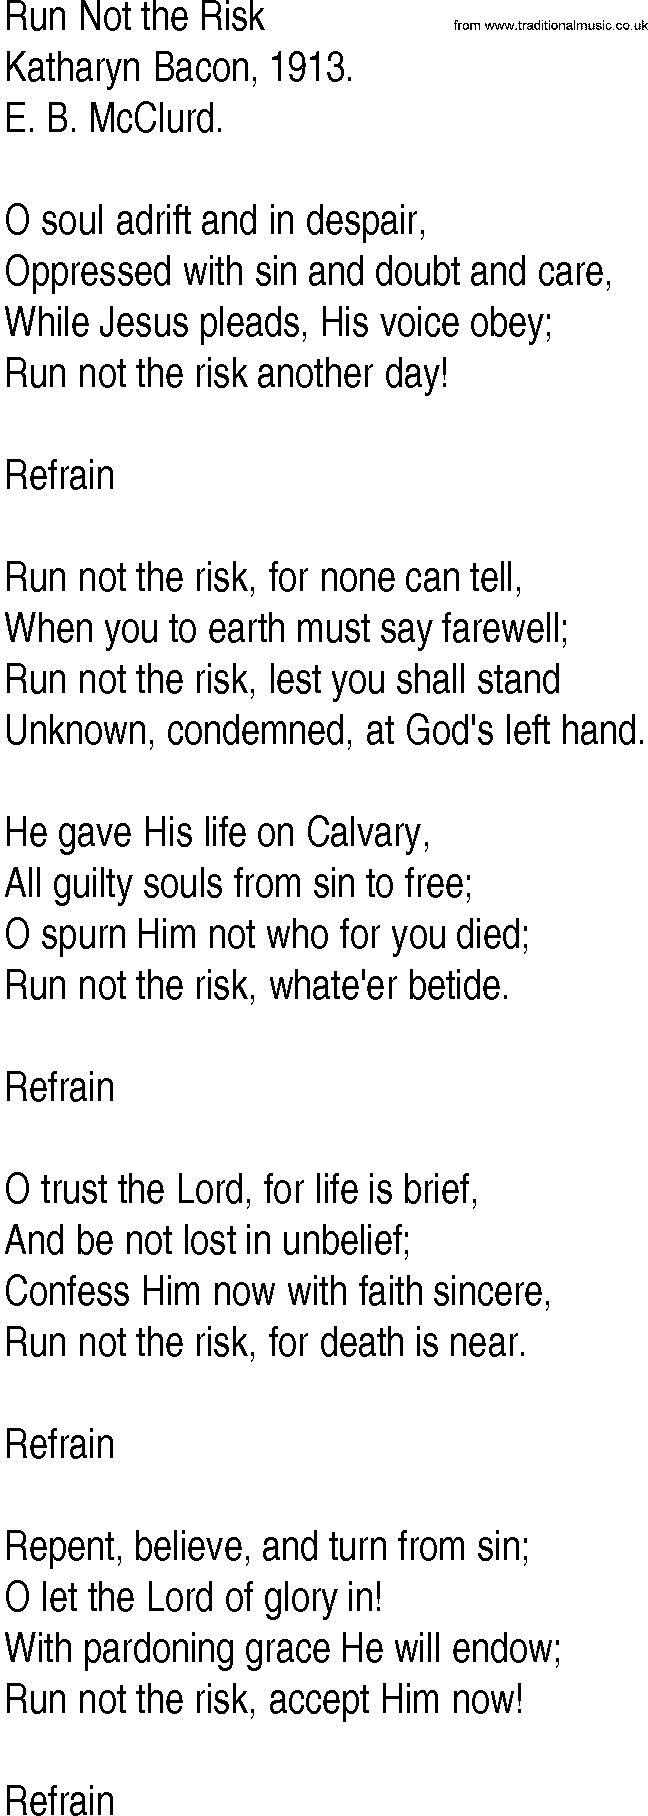 Hymn and Gospel Song: Run Not the Risk by Katharyn Bacon lyrics